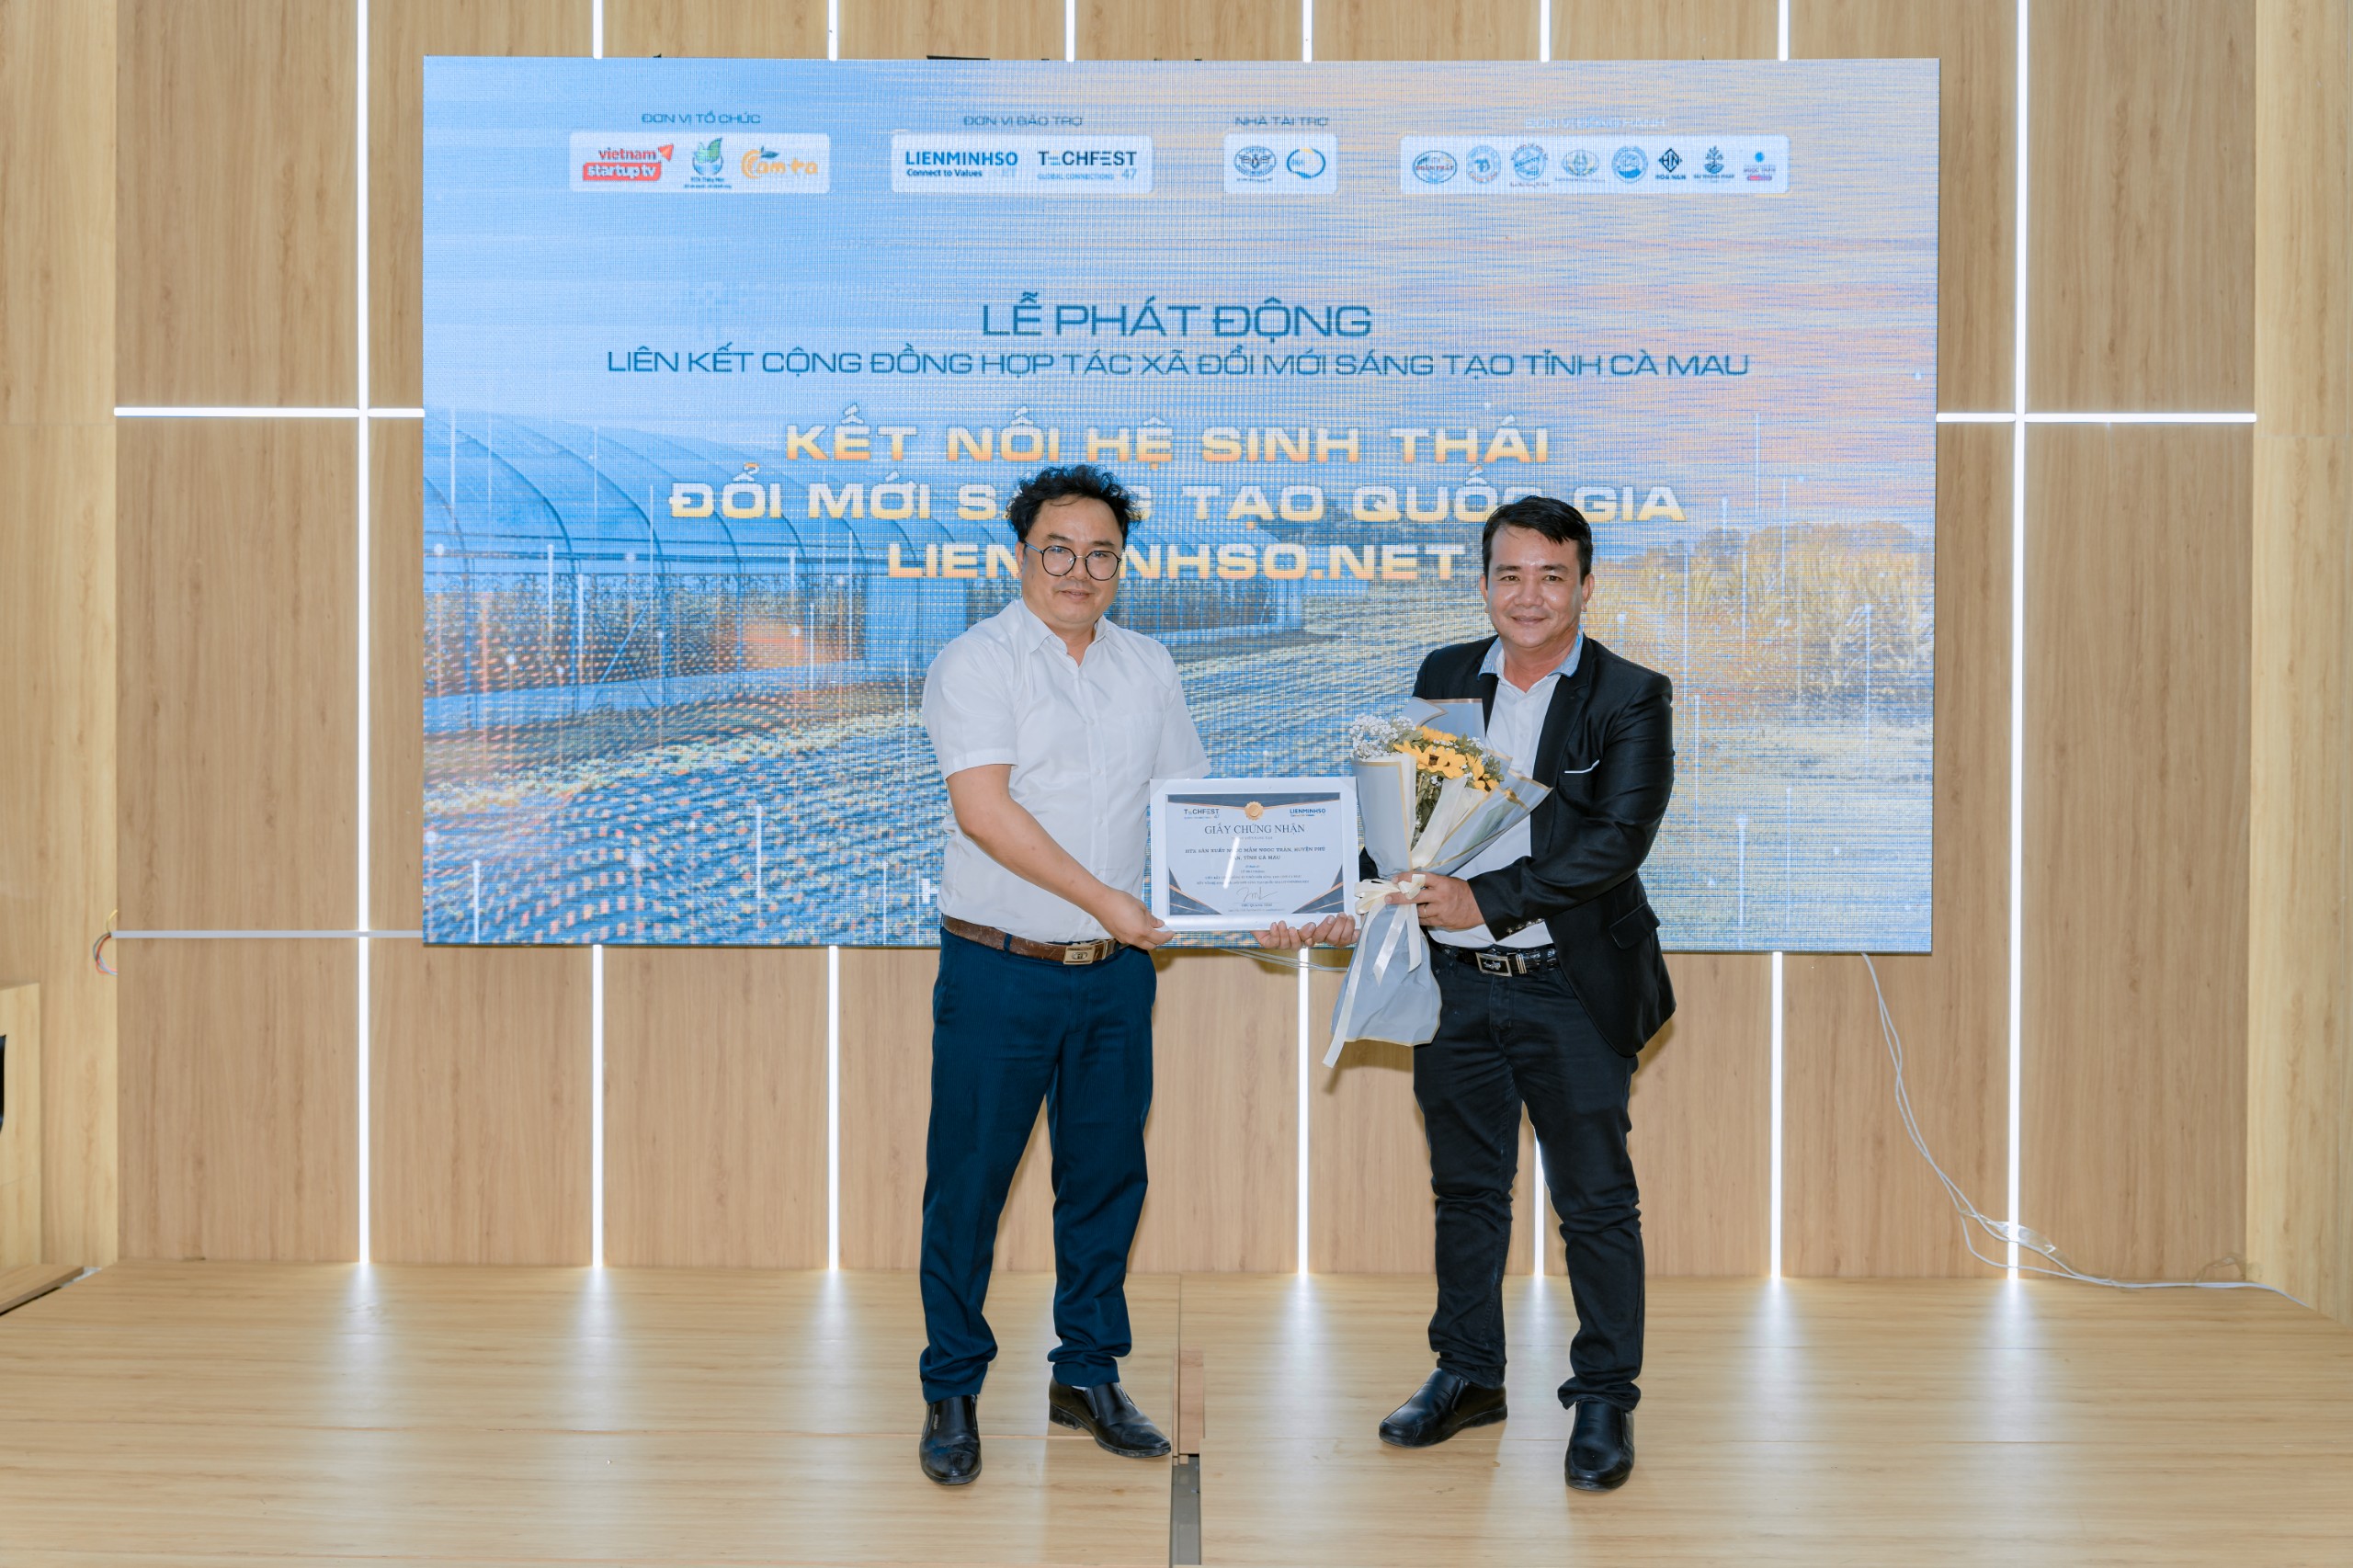 Ông Chu Quang Thái – Thường trực phía Nam Trung tâm khởi nghiệp sáng tạo quốc gia trao tặng bằng khen cho đại diện HTX Thủy Mộc với những đóng góp tích cực, lan tỏa các mô hình ĐMST